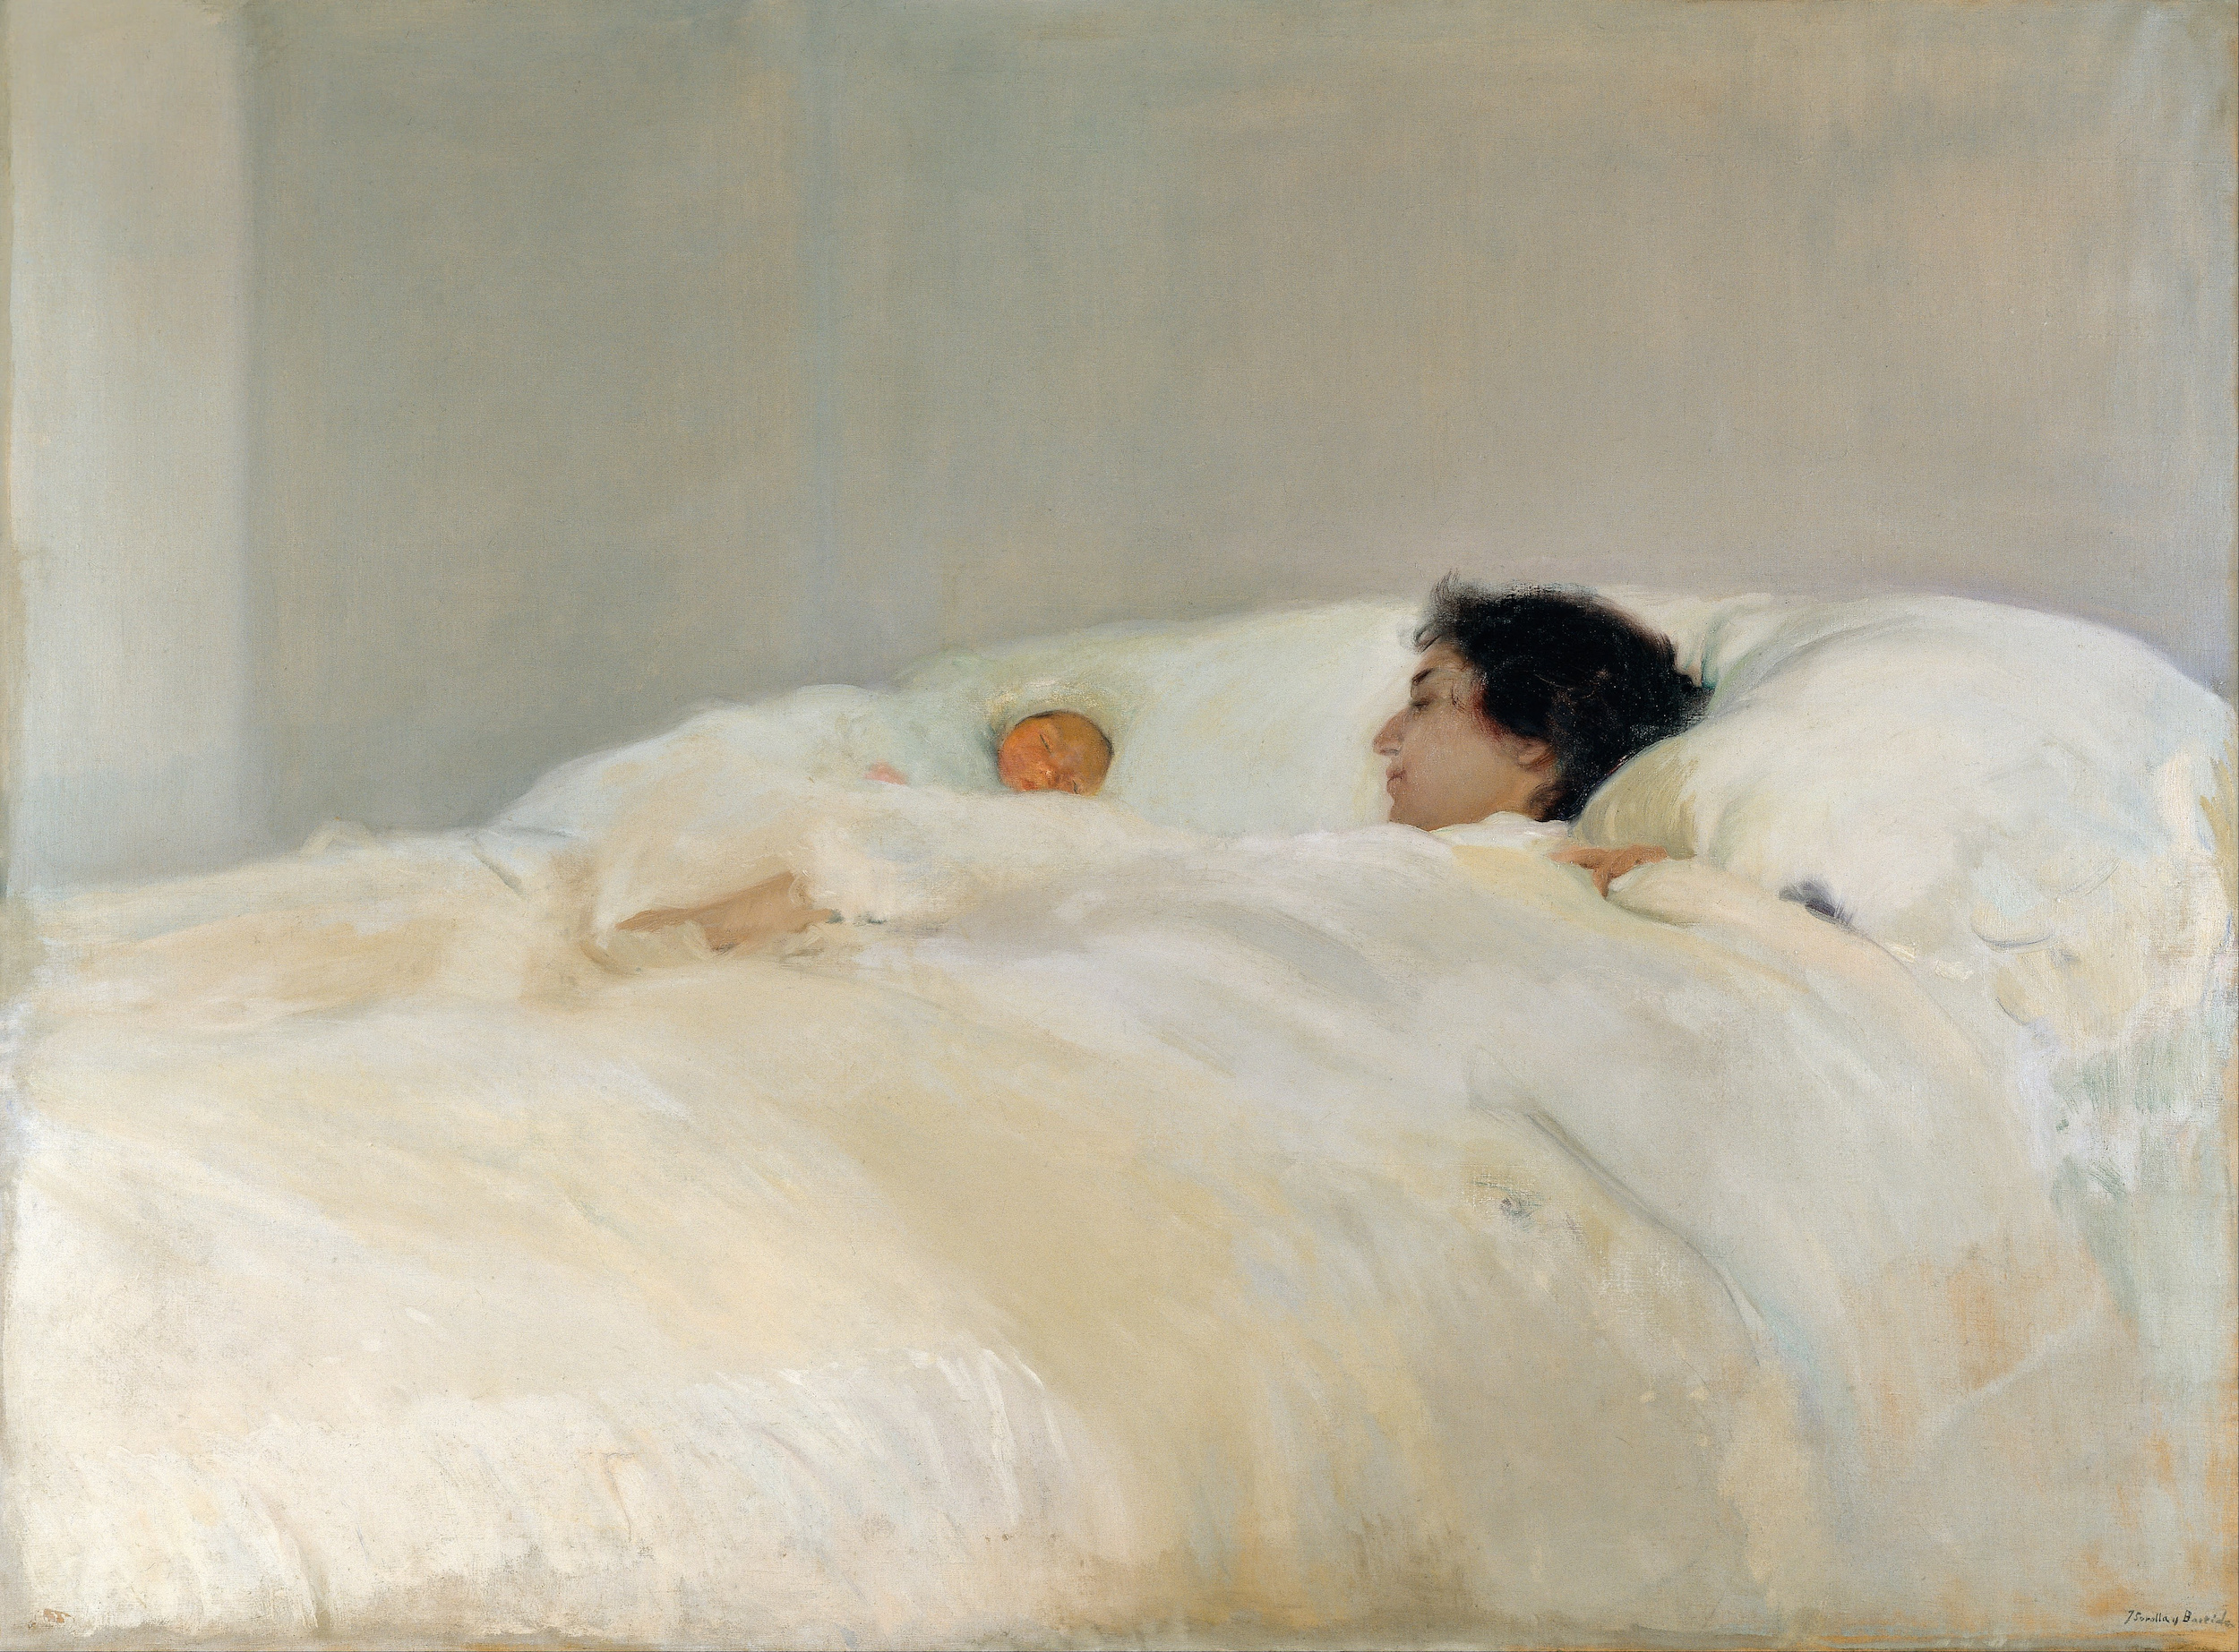 Mutter by Joaquín Sorolla - 1895 - 125 x 169 cm Museo Sorolla